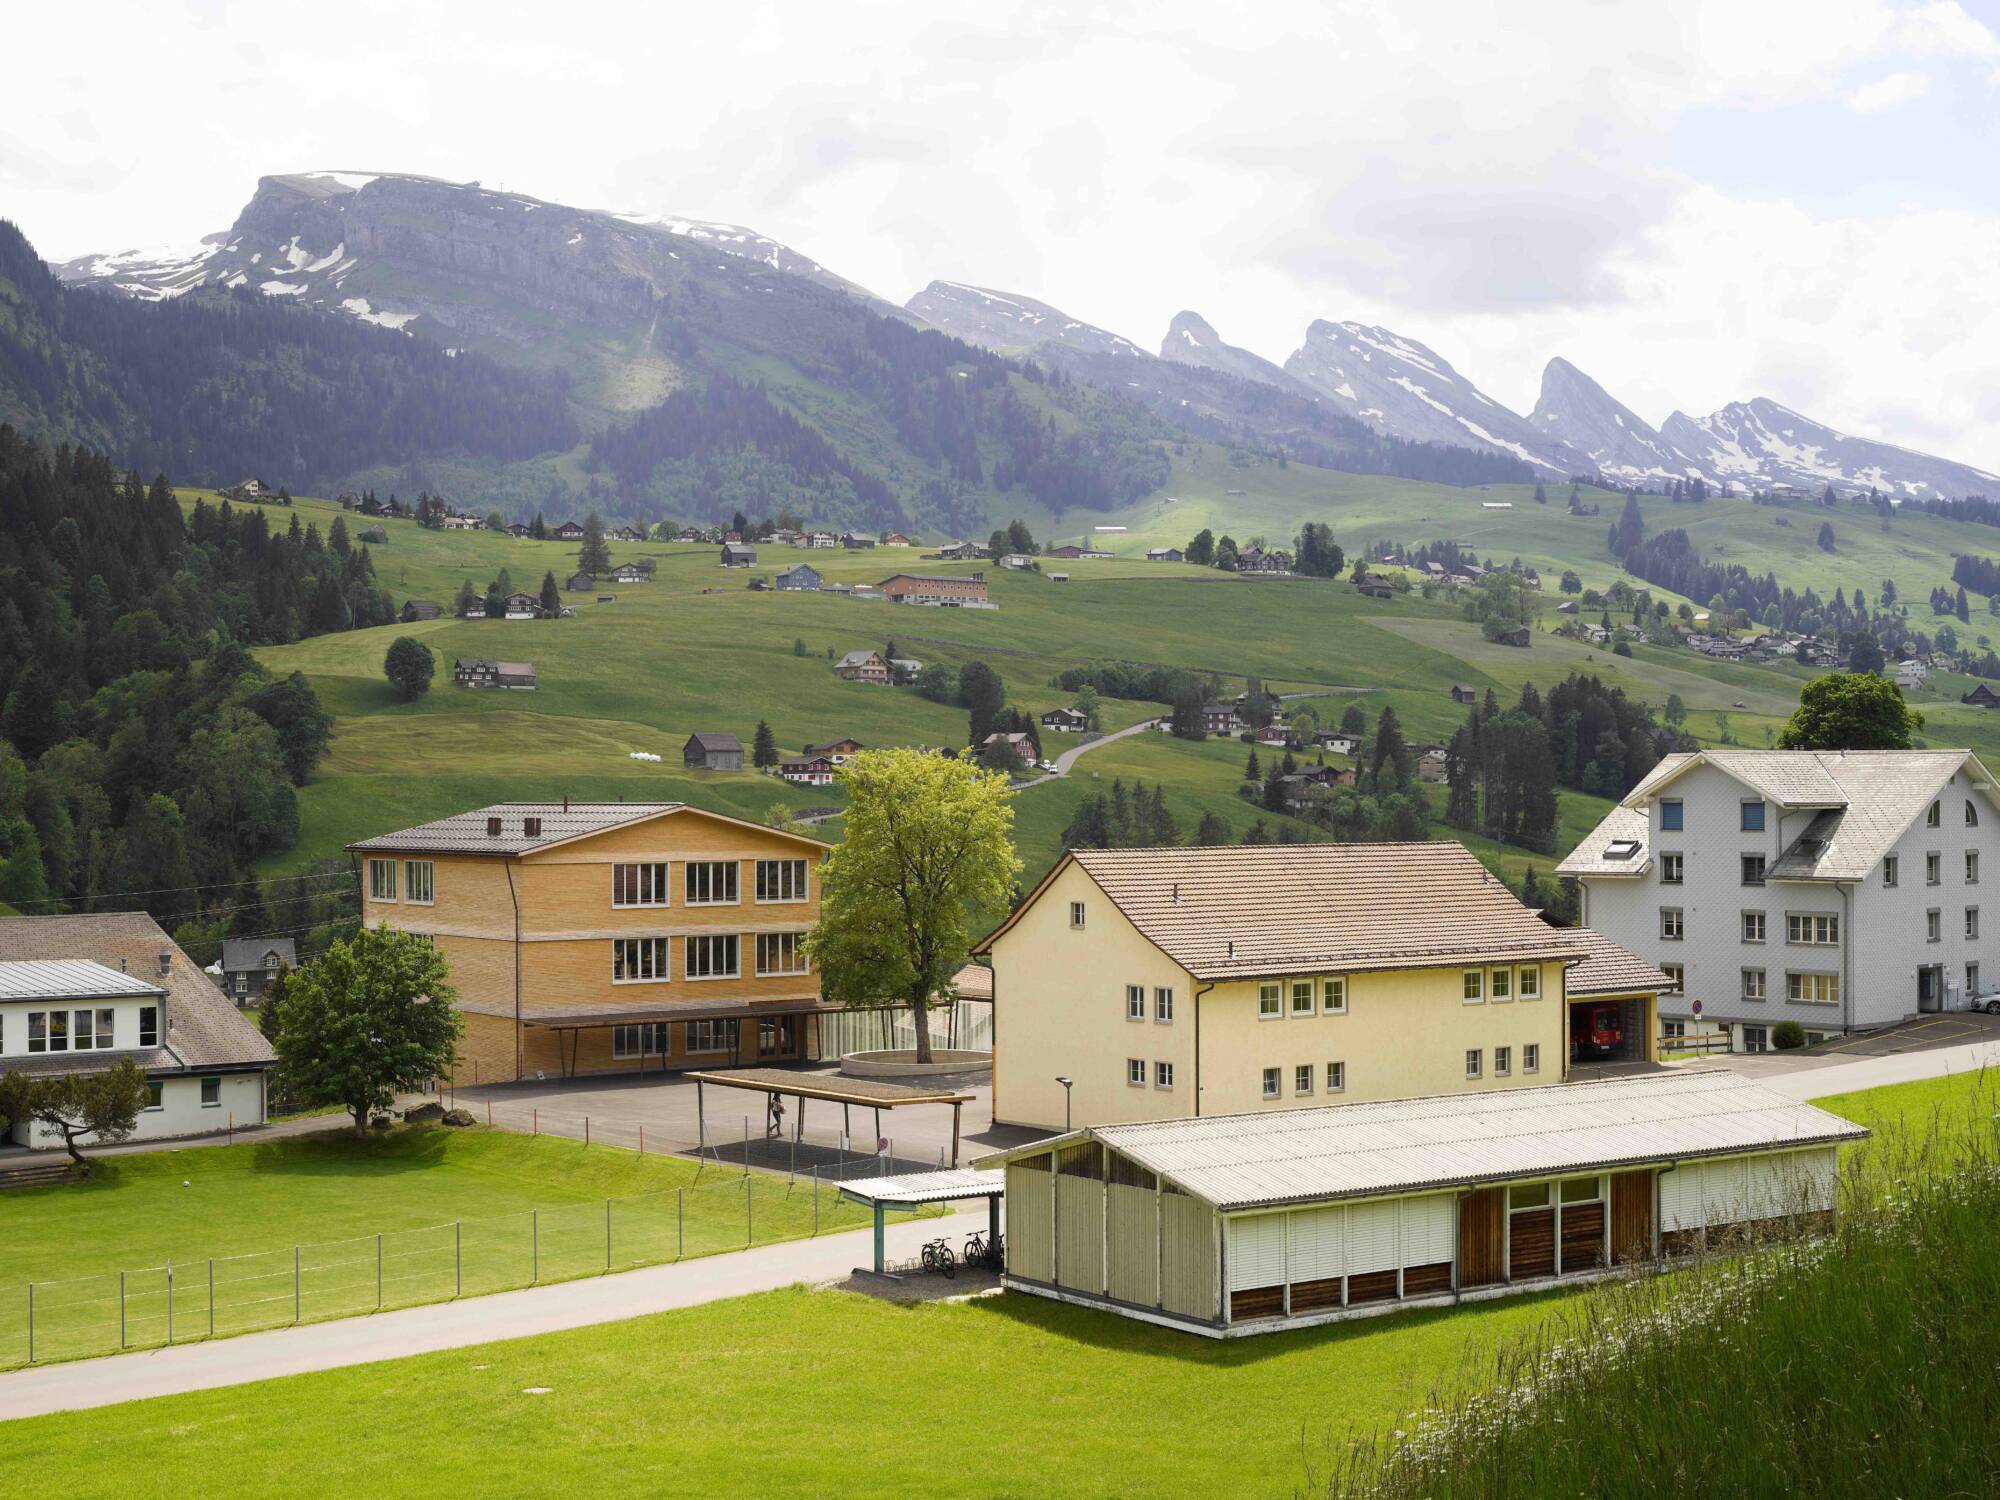 Freistehende Gebäude und sattgrüne Talhänge prägen das Ortsbild Toggenburgs – analog dazu die neue Primarschule Wildhaus.